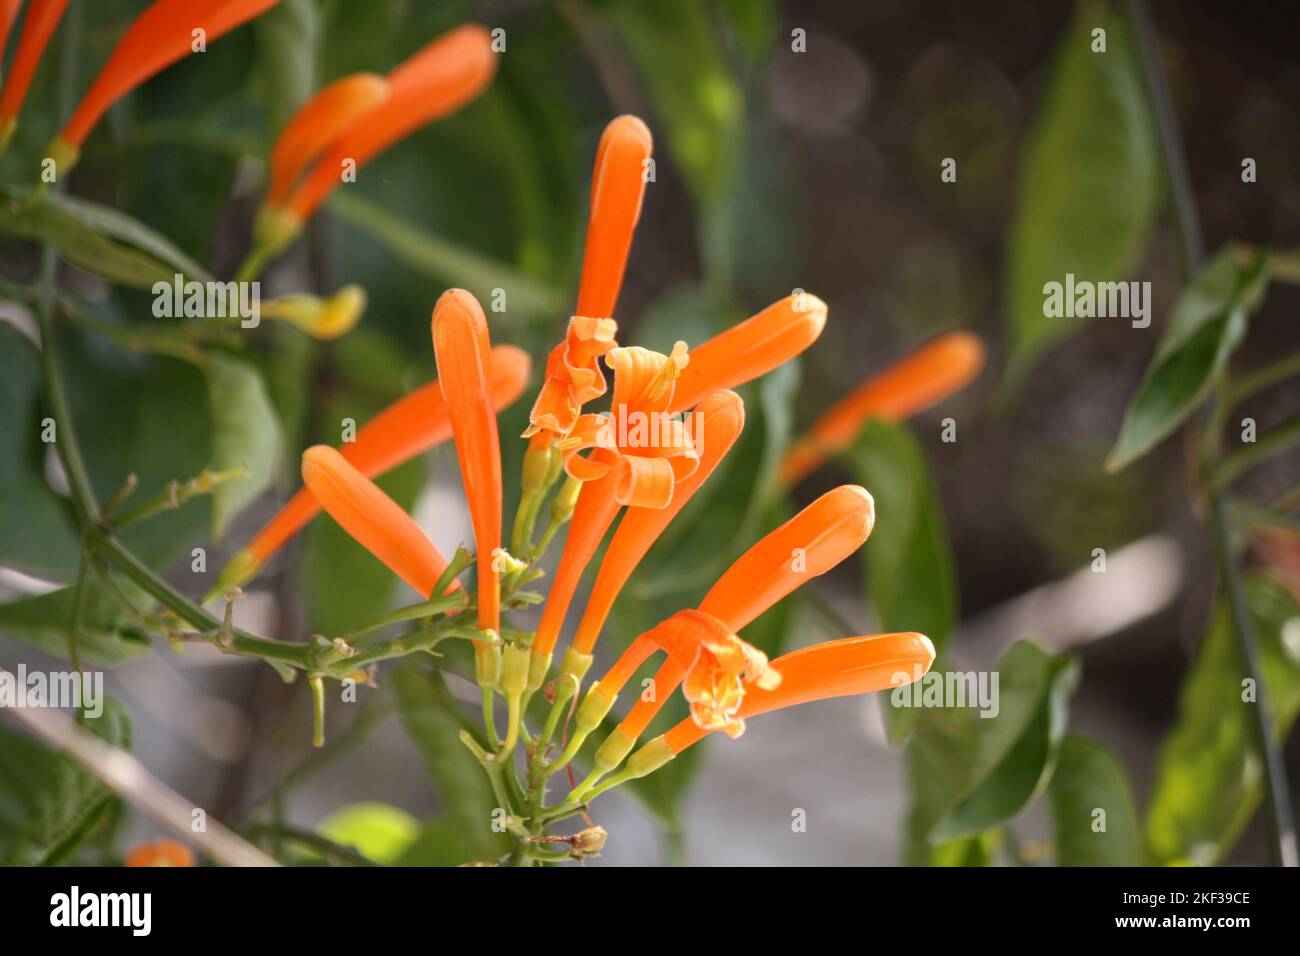 Orange trumpet creeper (Pyrostegia venusta) on a house wall : (pix SShukla) Stock Photo